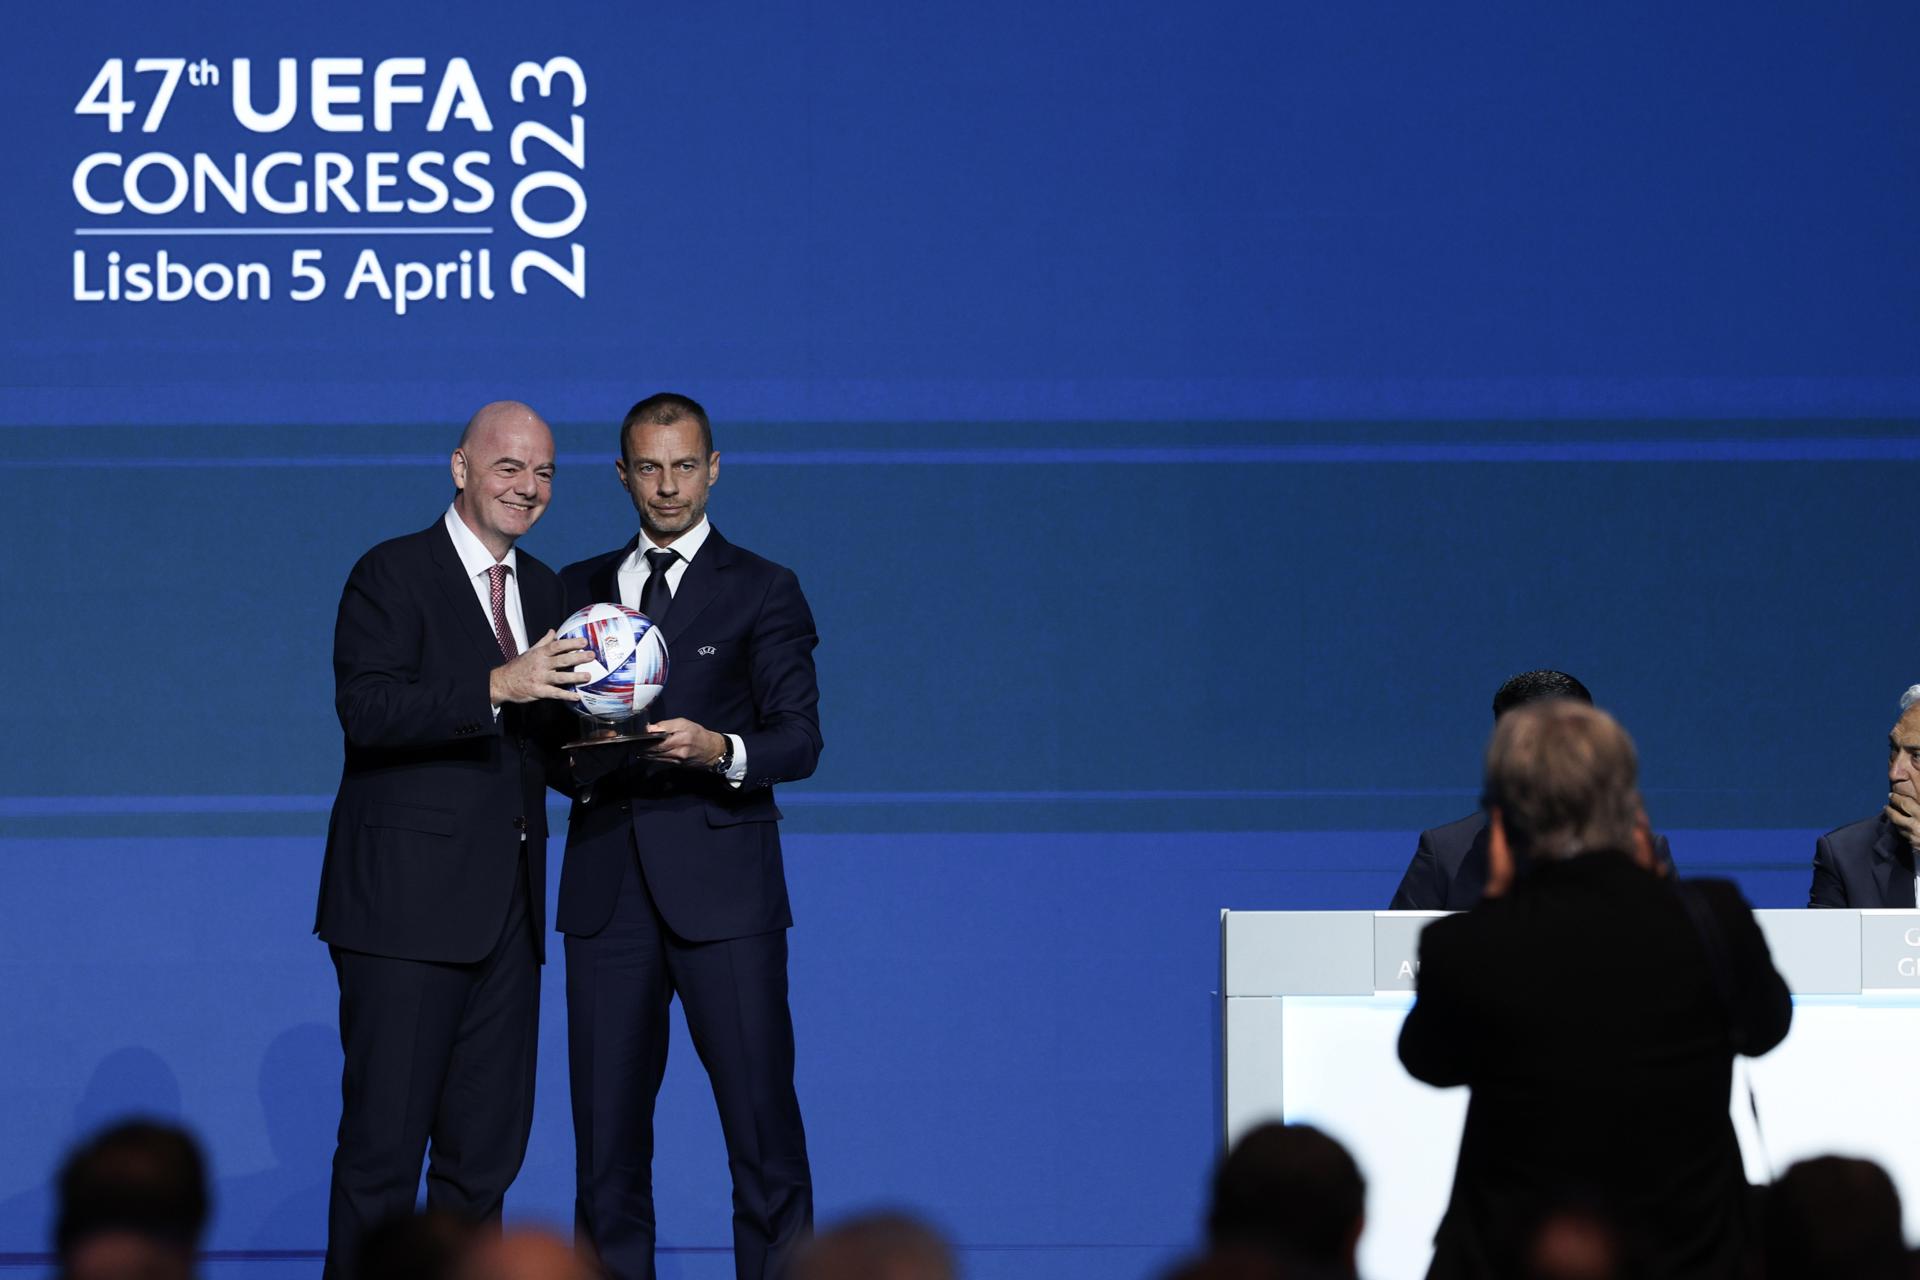 La FIFA y UEFA abusaron de su posición dominante ante Superliga